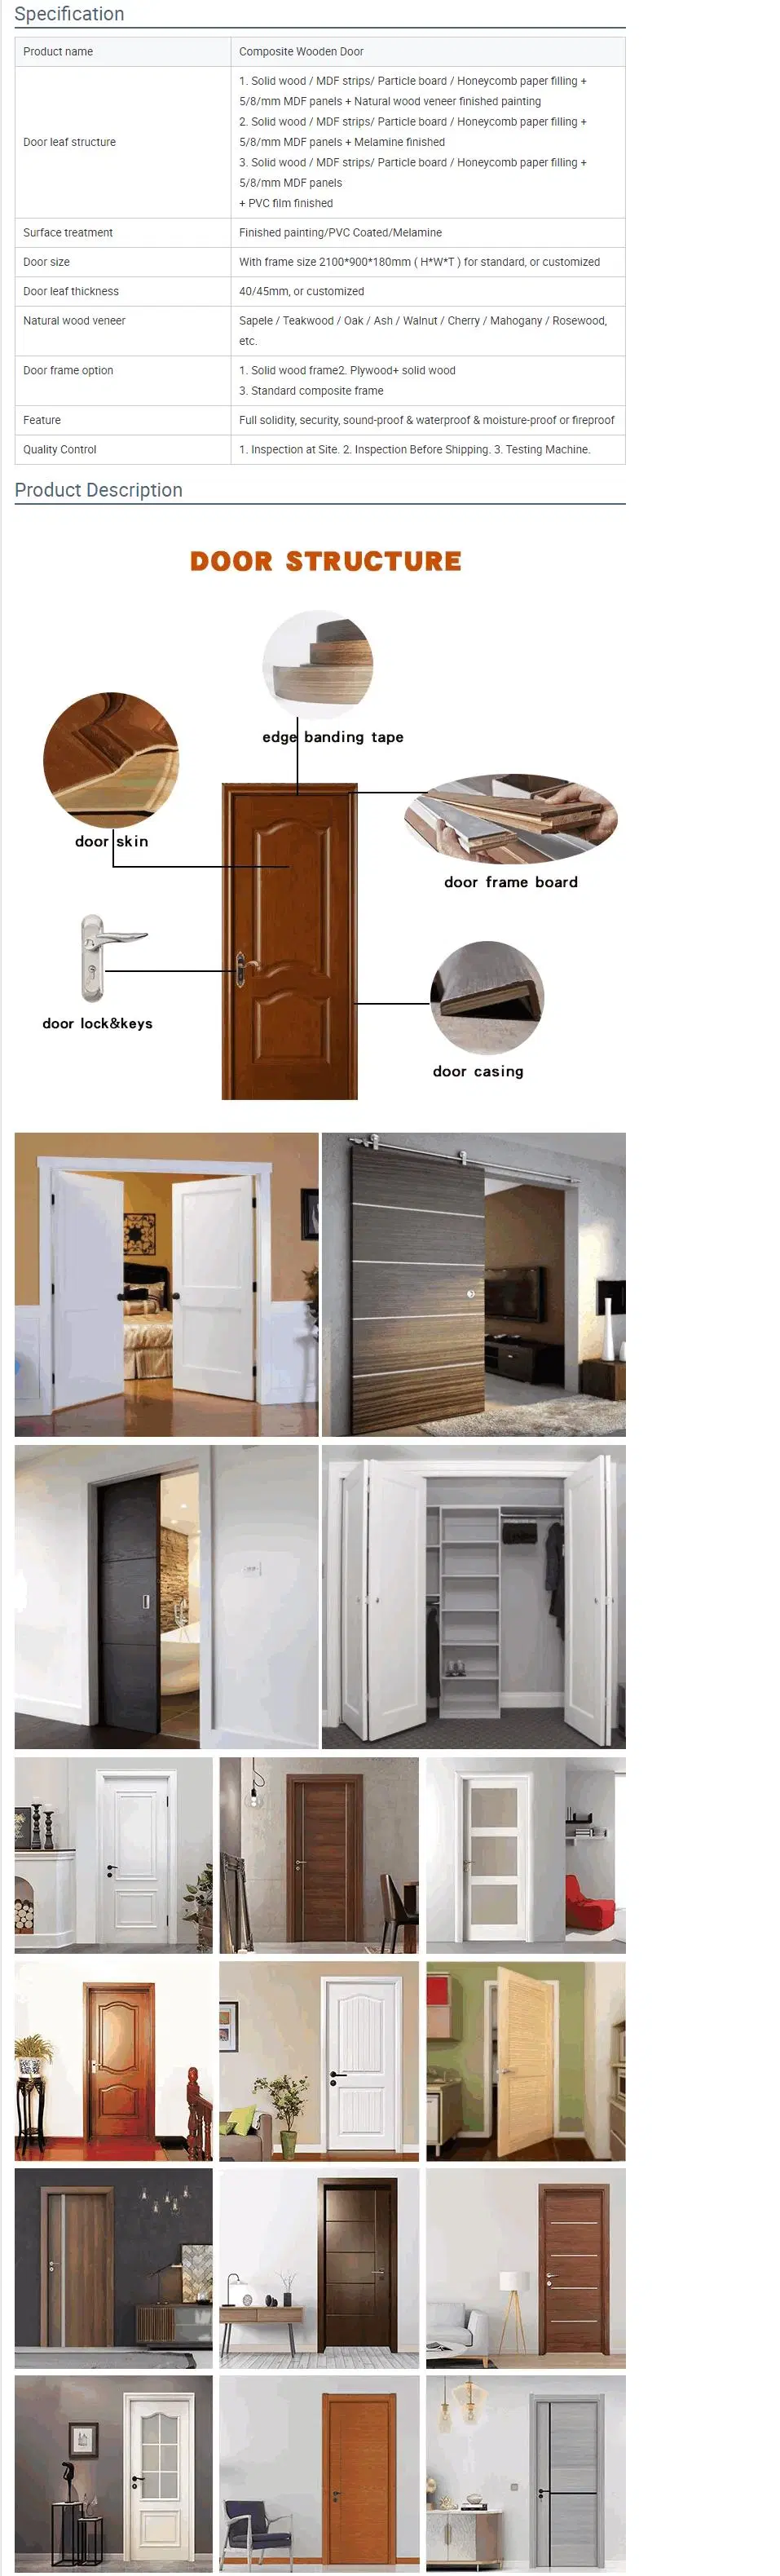 Modern Design Door Internal Bedroom Waterproof WPC PVC Solid Interior Wooden Doors